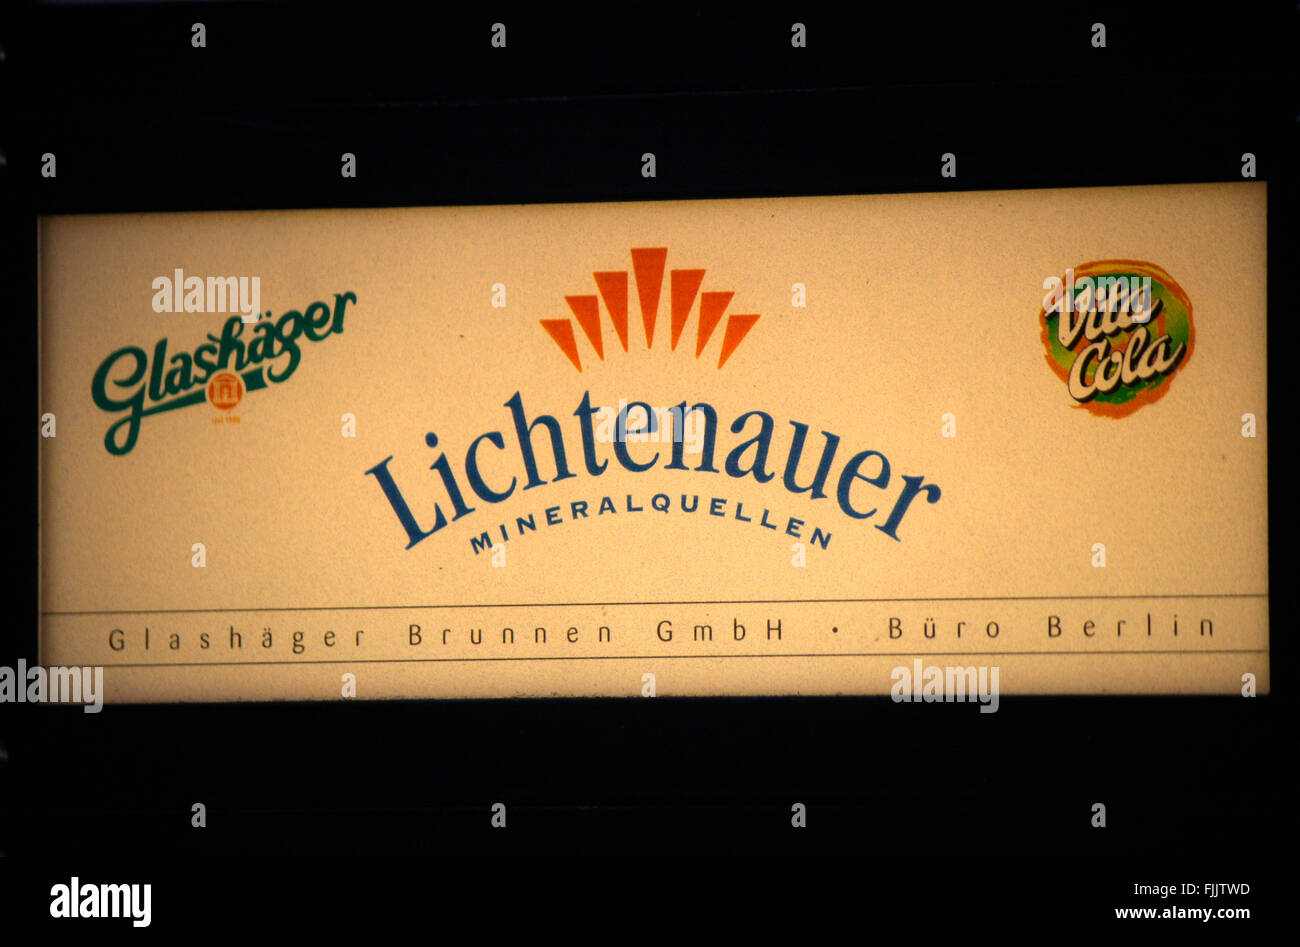 Markenname: 'Glashaeger', 'Lichtenauer Mineralquellen' und 'Vita Cola', Berlin. Stock Photo